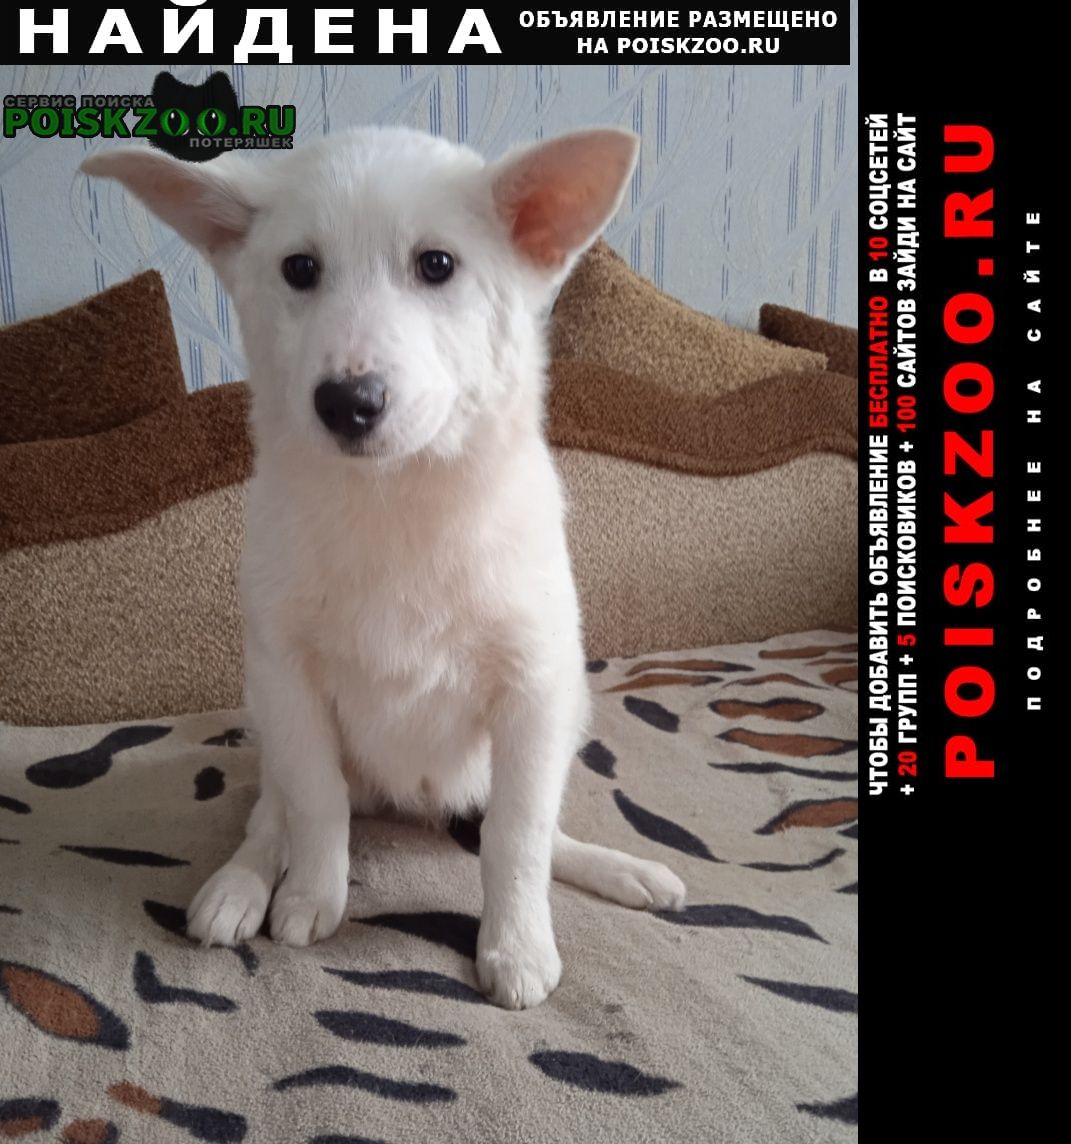 Найдена собака кобель на один щенок был шестнадцатого числа ма Нижний Новгород